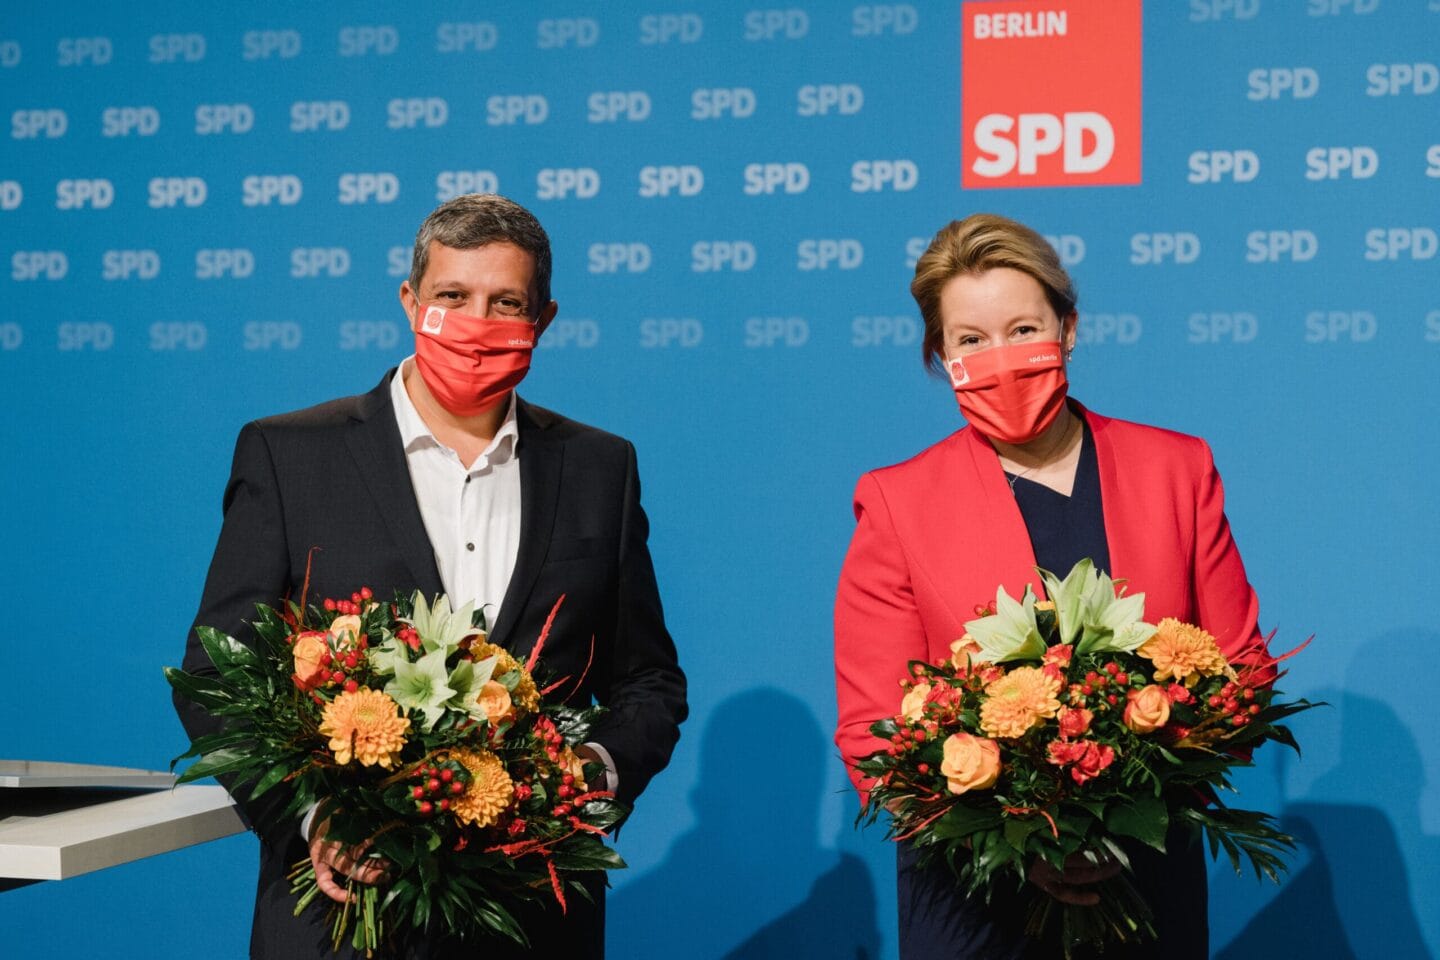 Berliner Modell: SPD Berlin führt erfolgreich ersten digitalen Parteitag durch 9